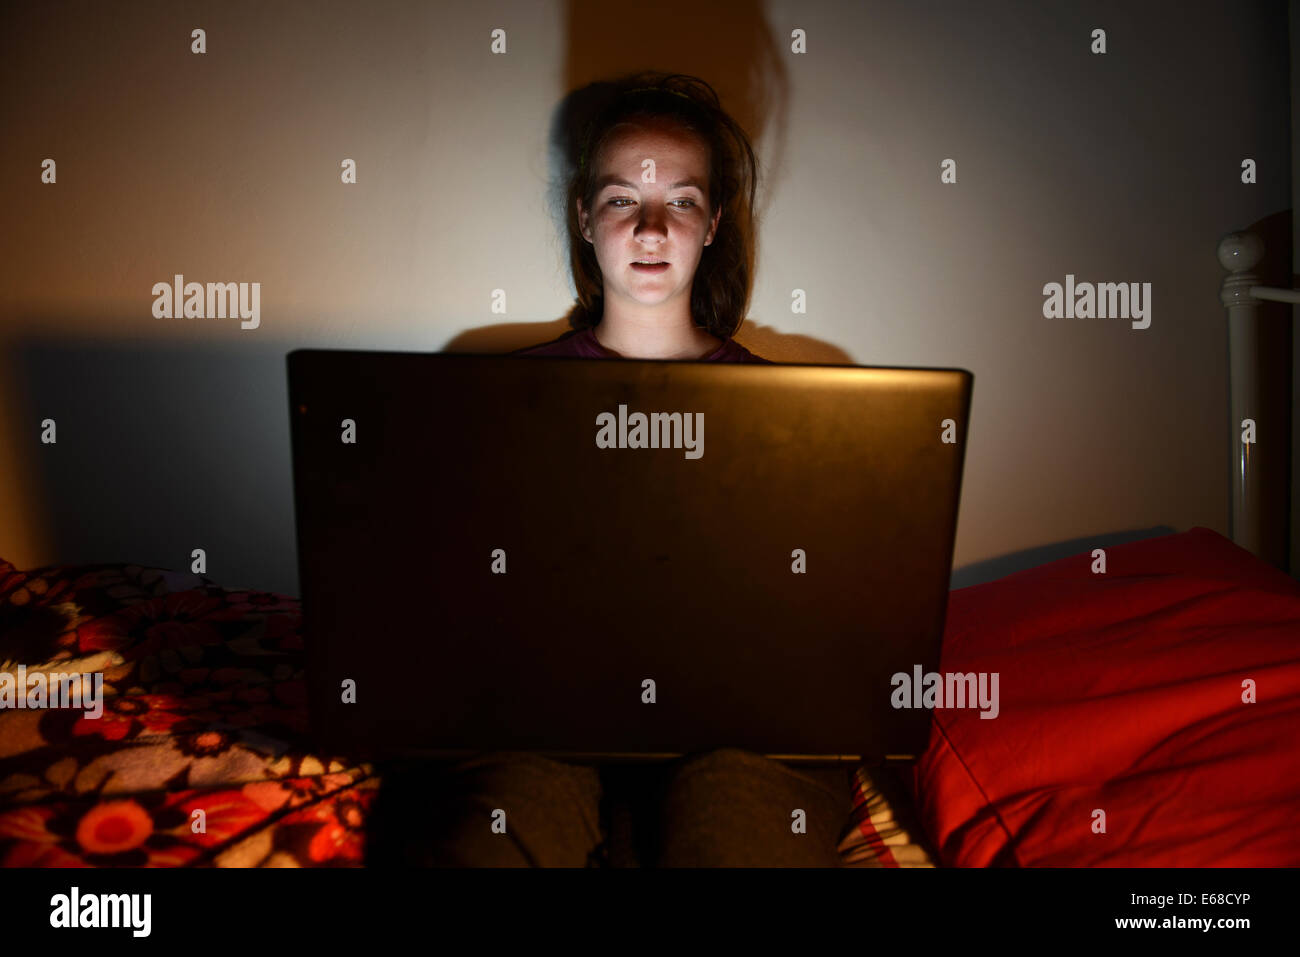 Computer portatile utilizzato da un bambino nella sua camera da letto, ragazza adolescente usando un computer portatile da sola nella sua camera da letto Foto Stock